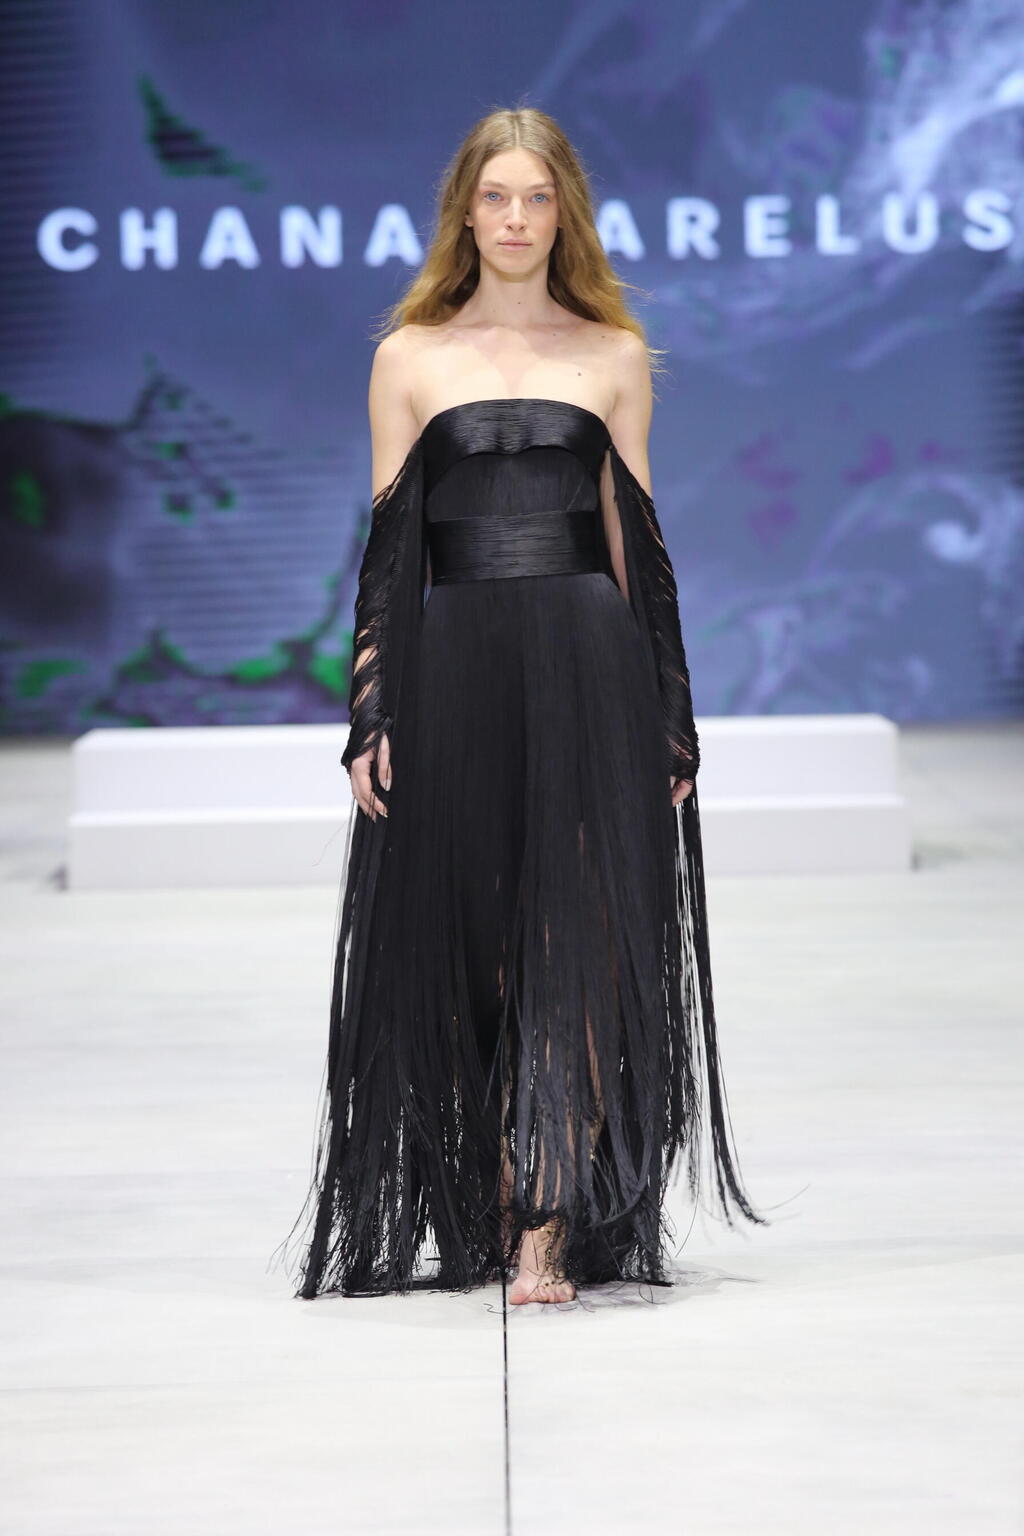 התצוגה של חנה מריליוס בשבוע האופנה קורנית תל אביב 2022